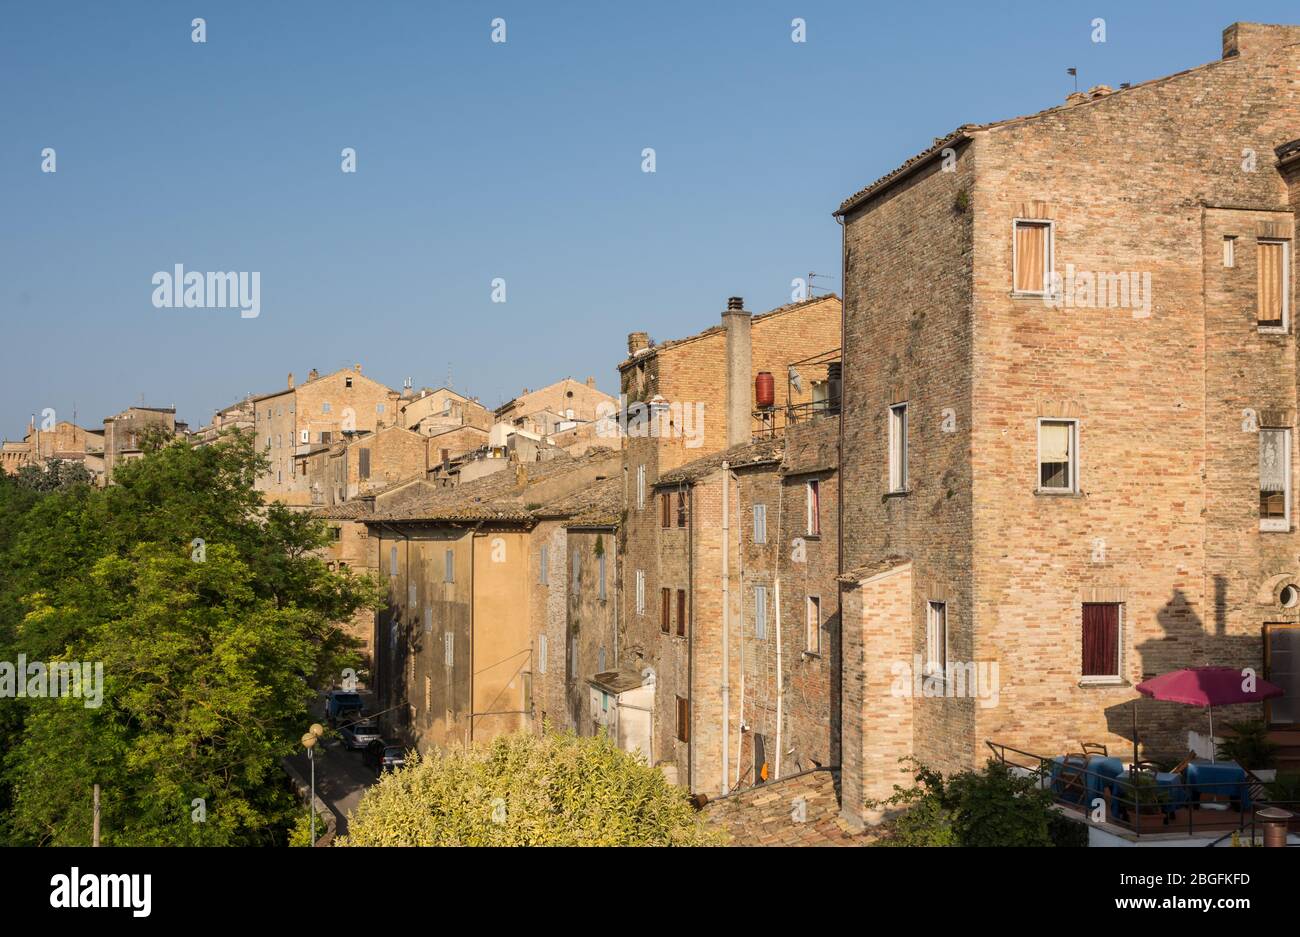 Acquaviva Picena small village on Marche region, Italy Stock Photo